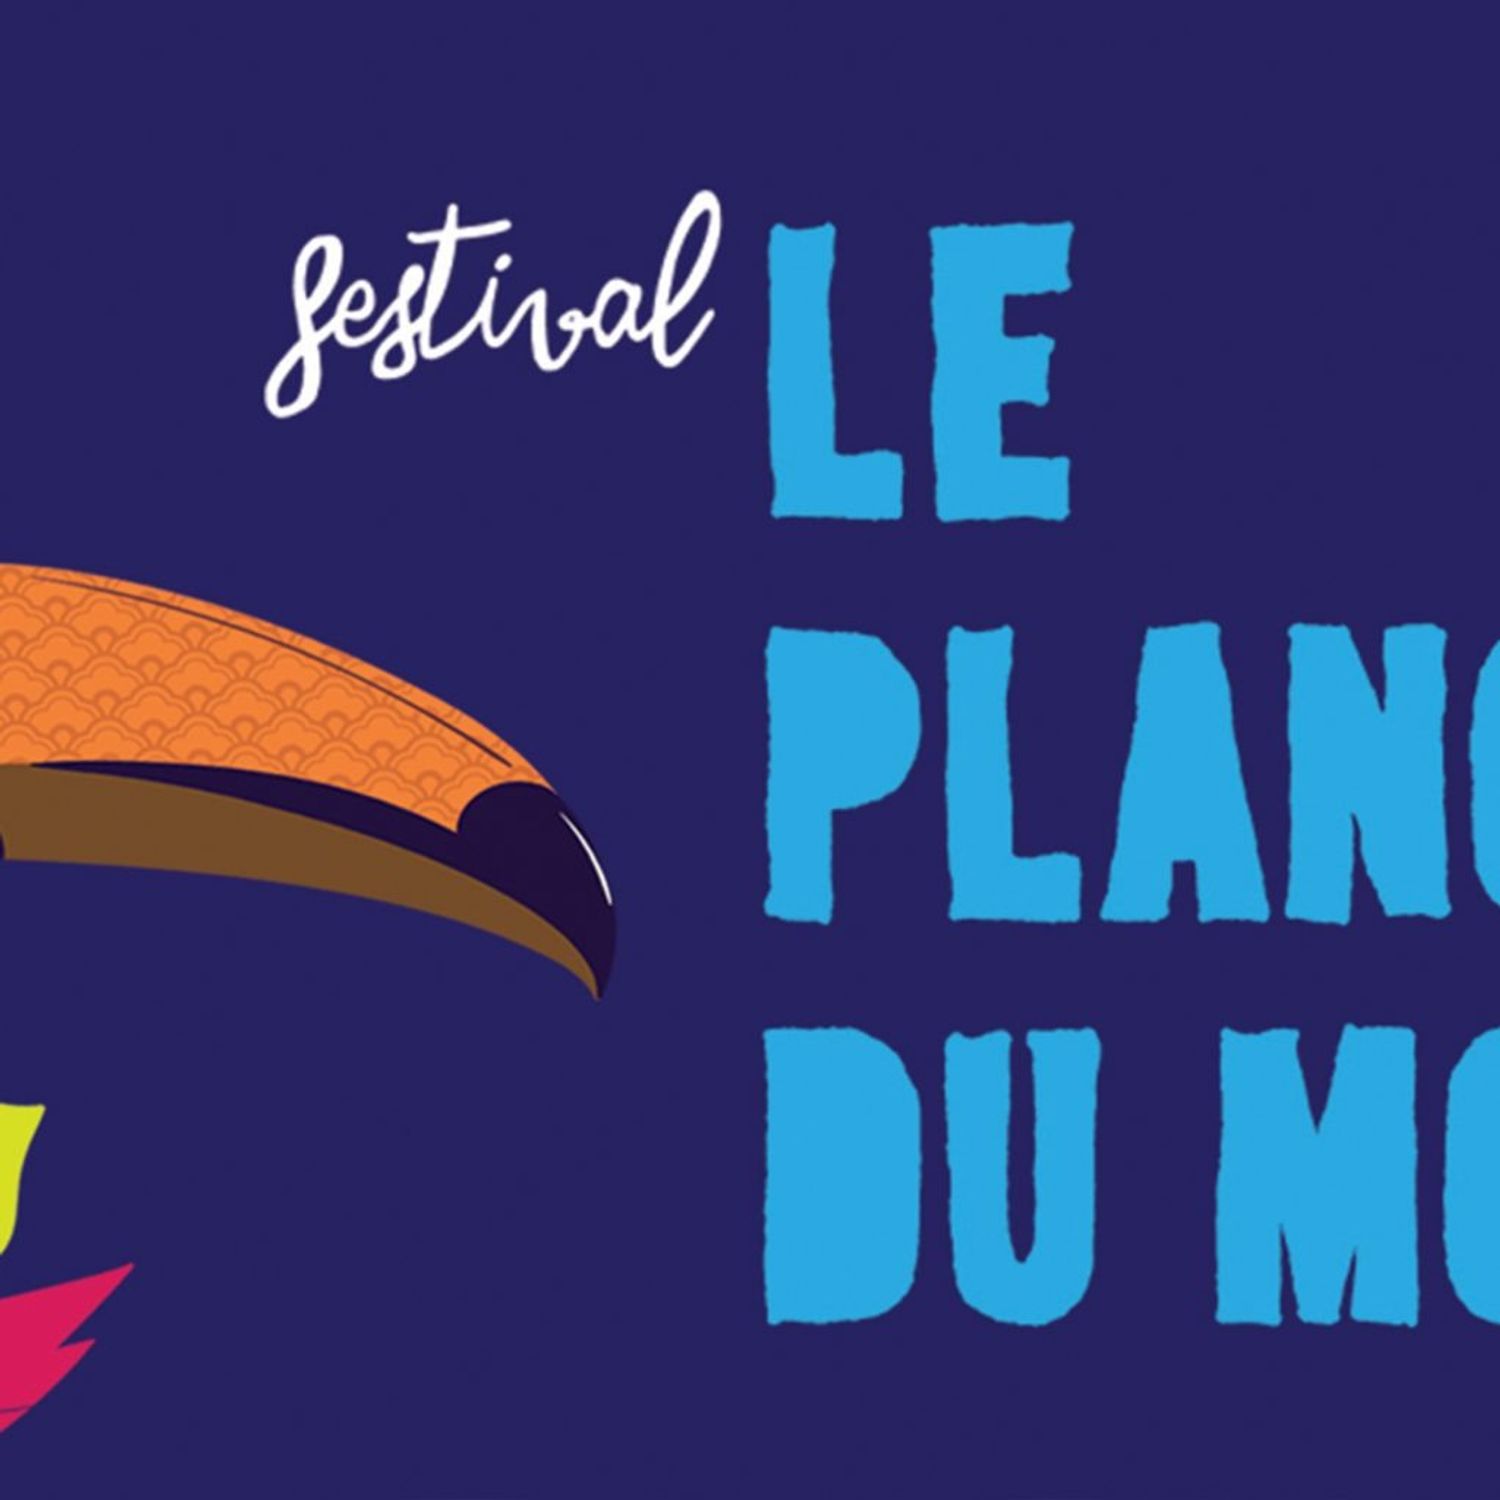 Langonnet: le festival Plancher du Monde vous attend samedi et...